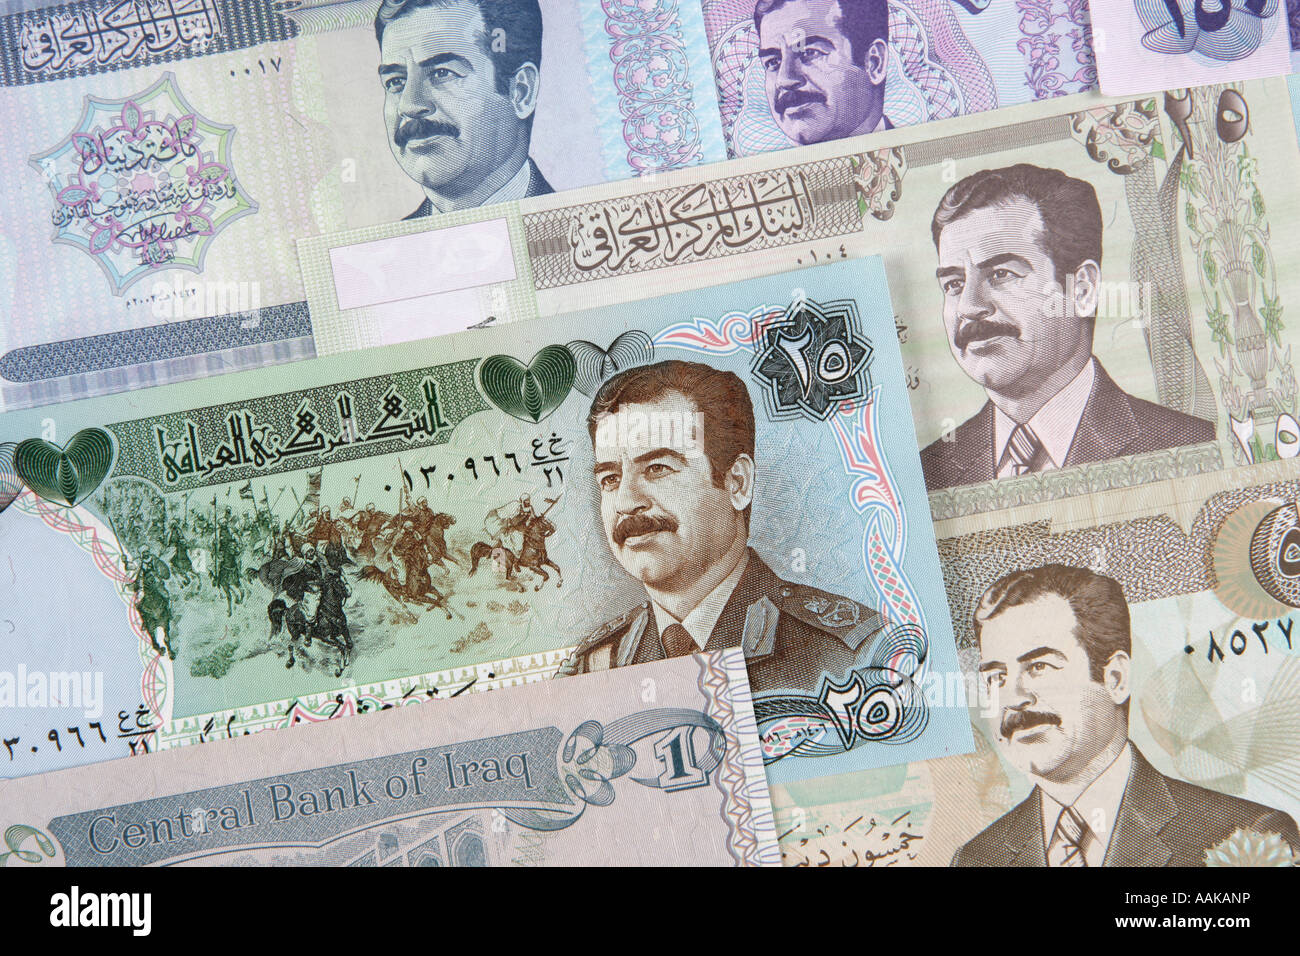 Verschiedenen Papiergeld-Dinar-Noten aus dem Irak sind diese Rechnungen aus dem ehemaligen Regime führen Sie durch den Diktator Suddam Hussein Stockfoto